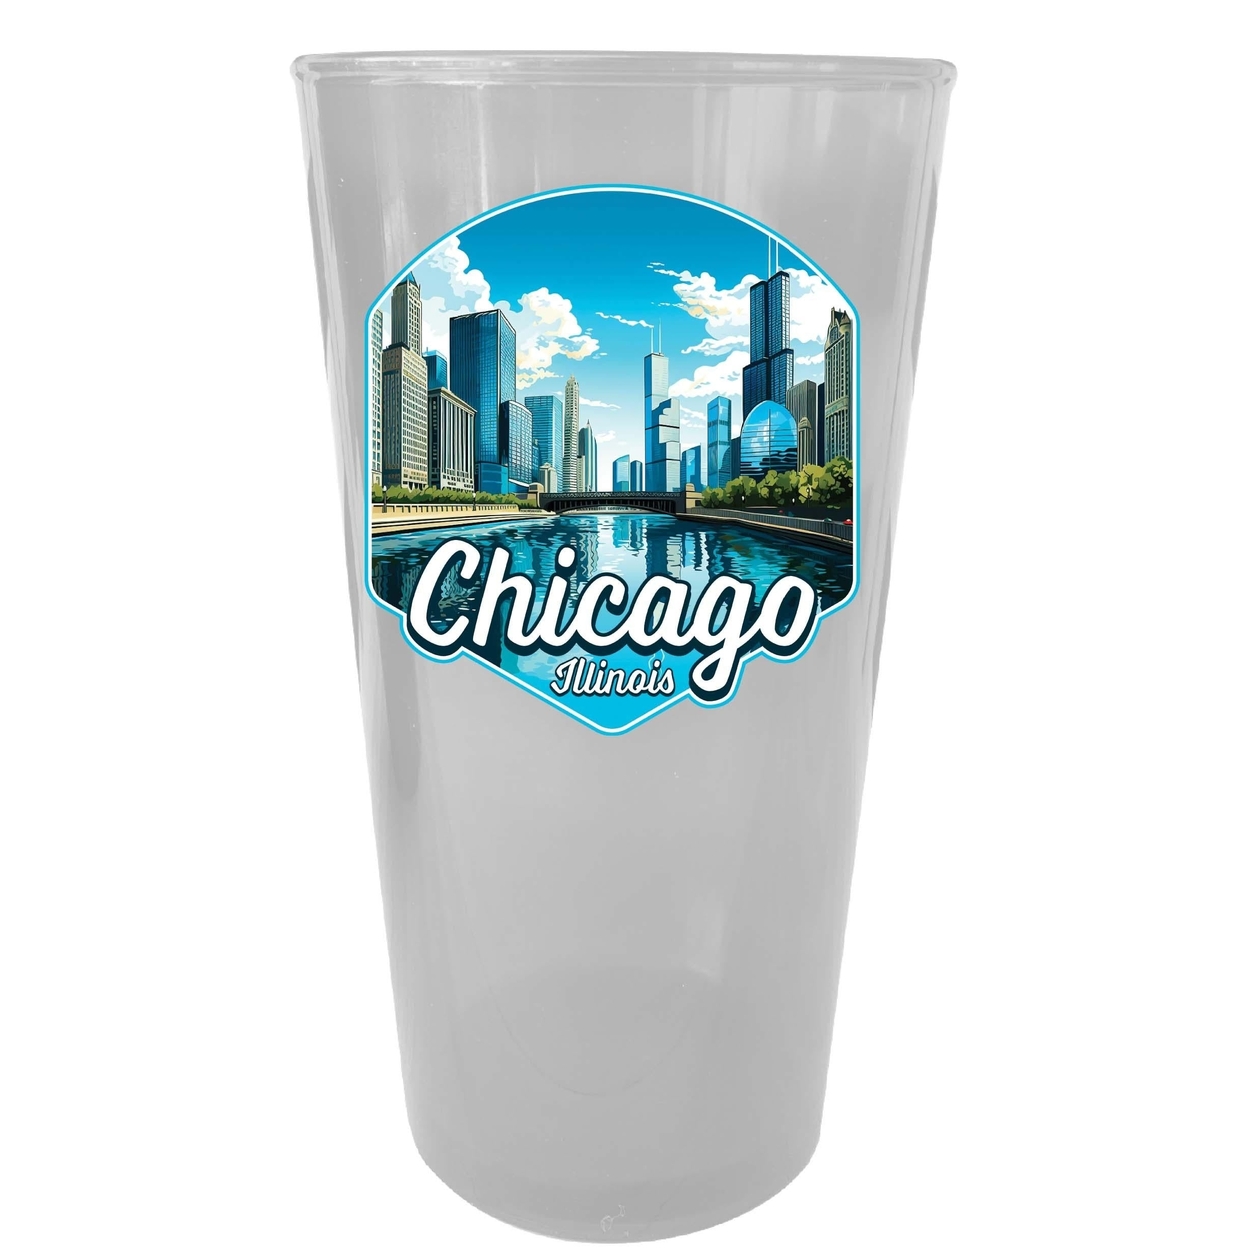 Chicago Illinois A Souvenir Plastic 16 Oz Pint - Clear,,4-Pack